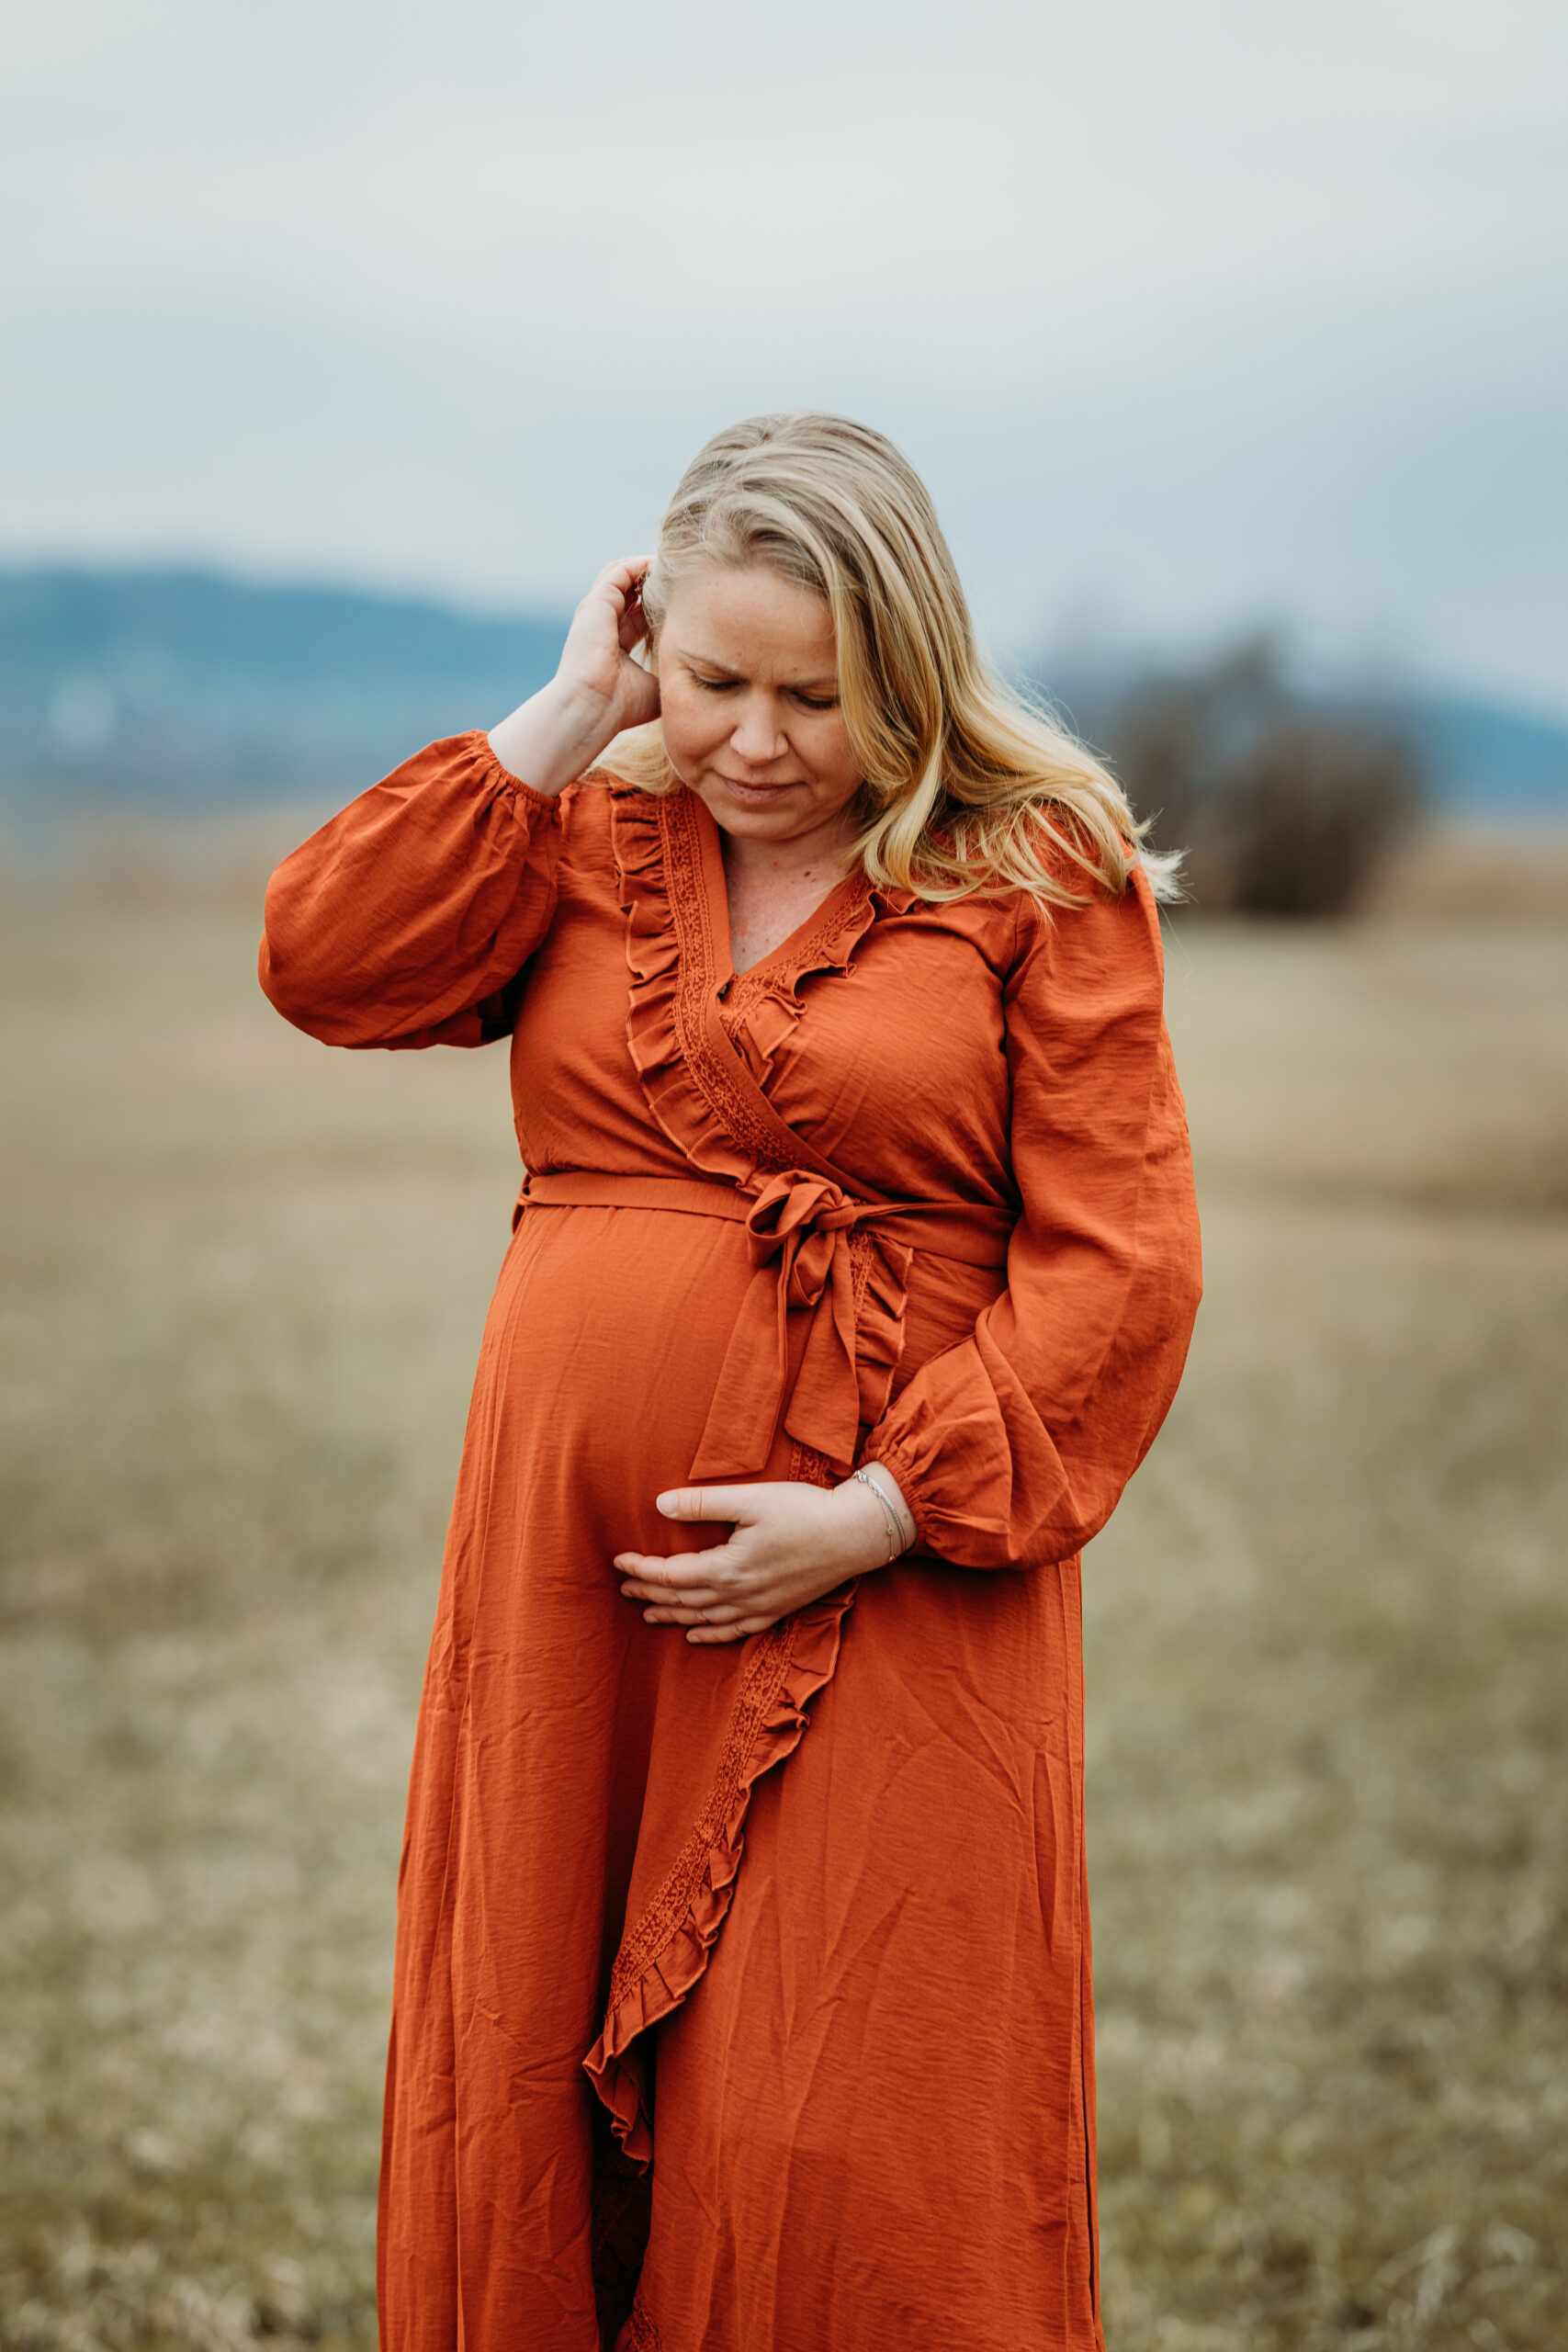 Schwangere in der Natur am Greifensee in einem schönem orangen Kleid